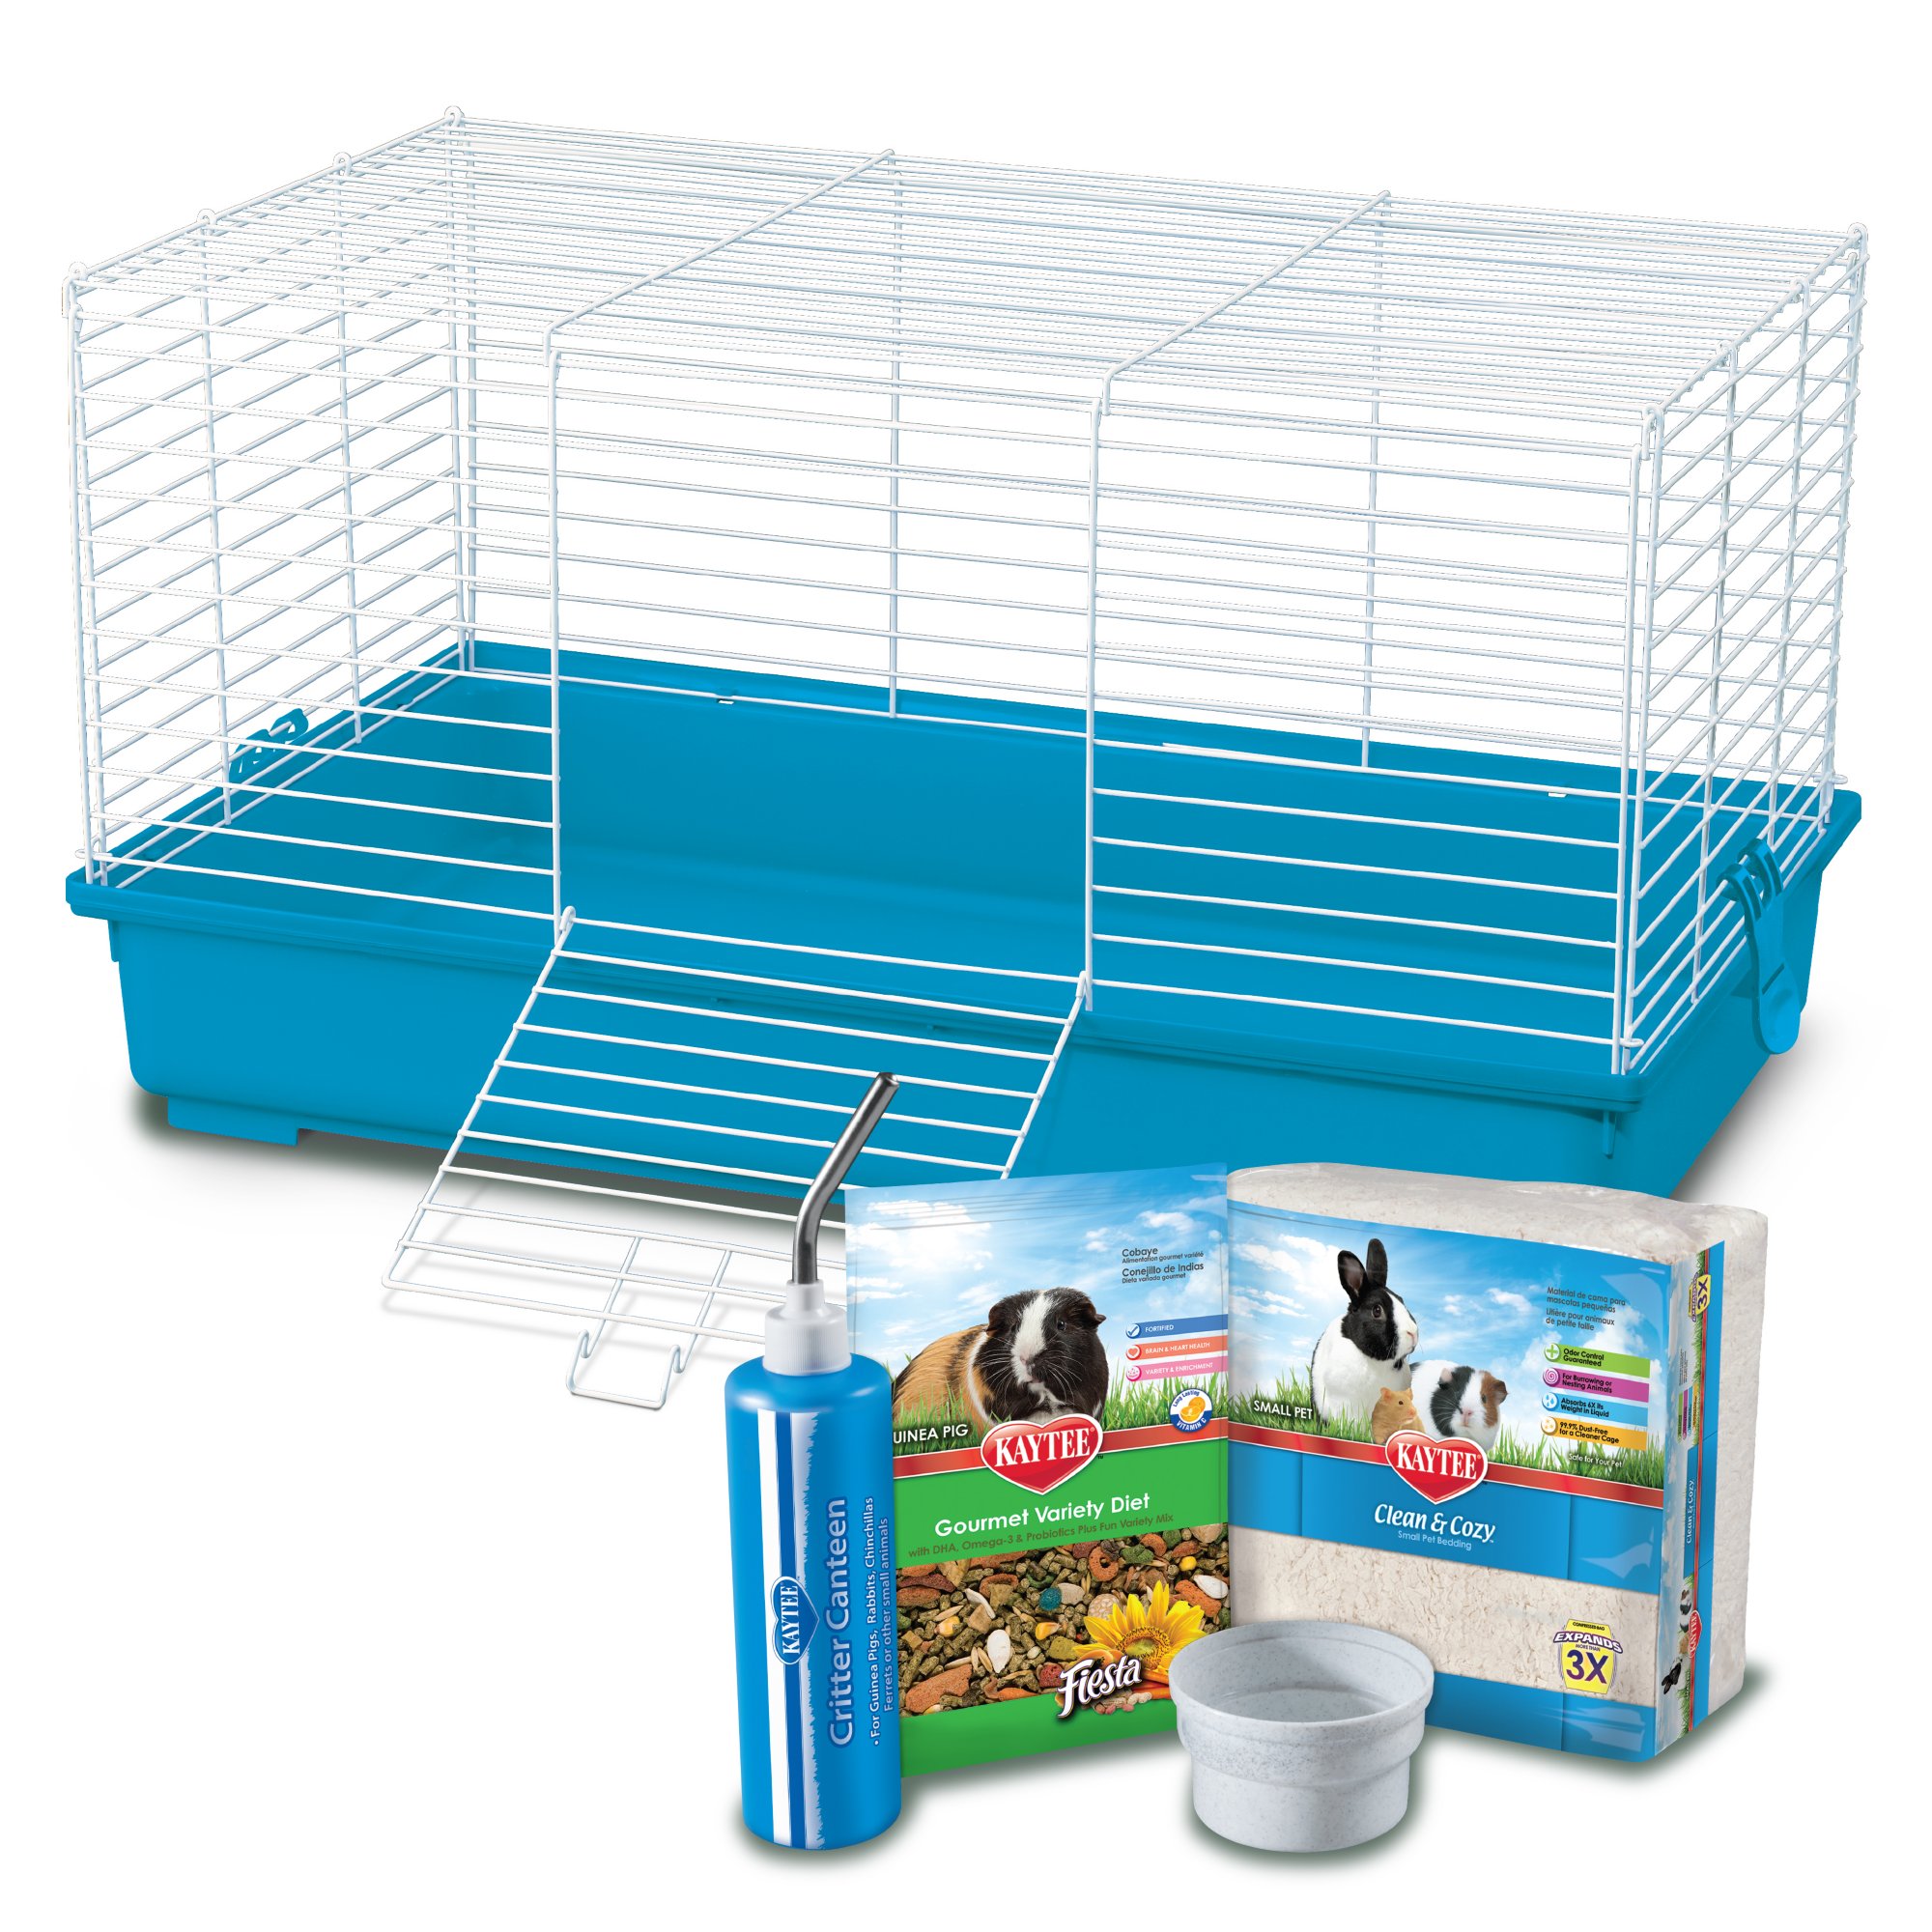 kaytee guinea pig kit